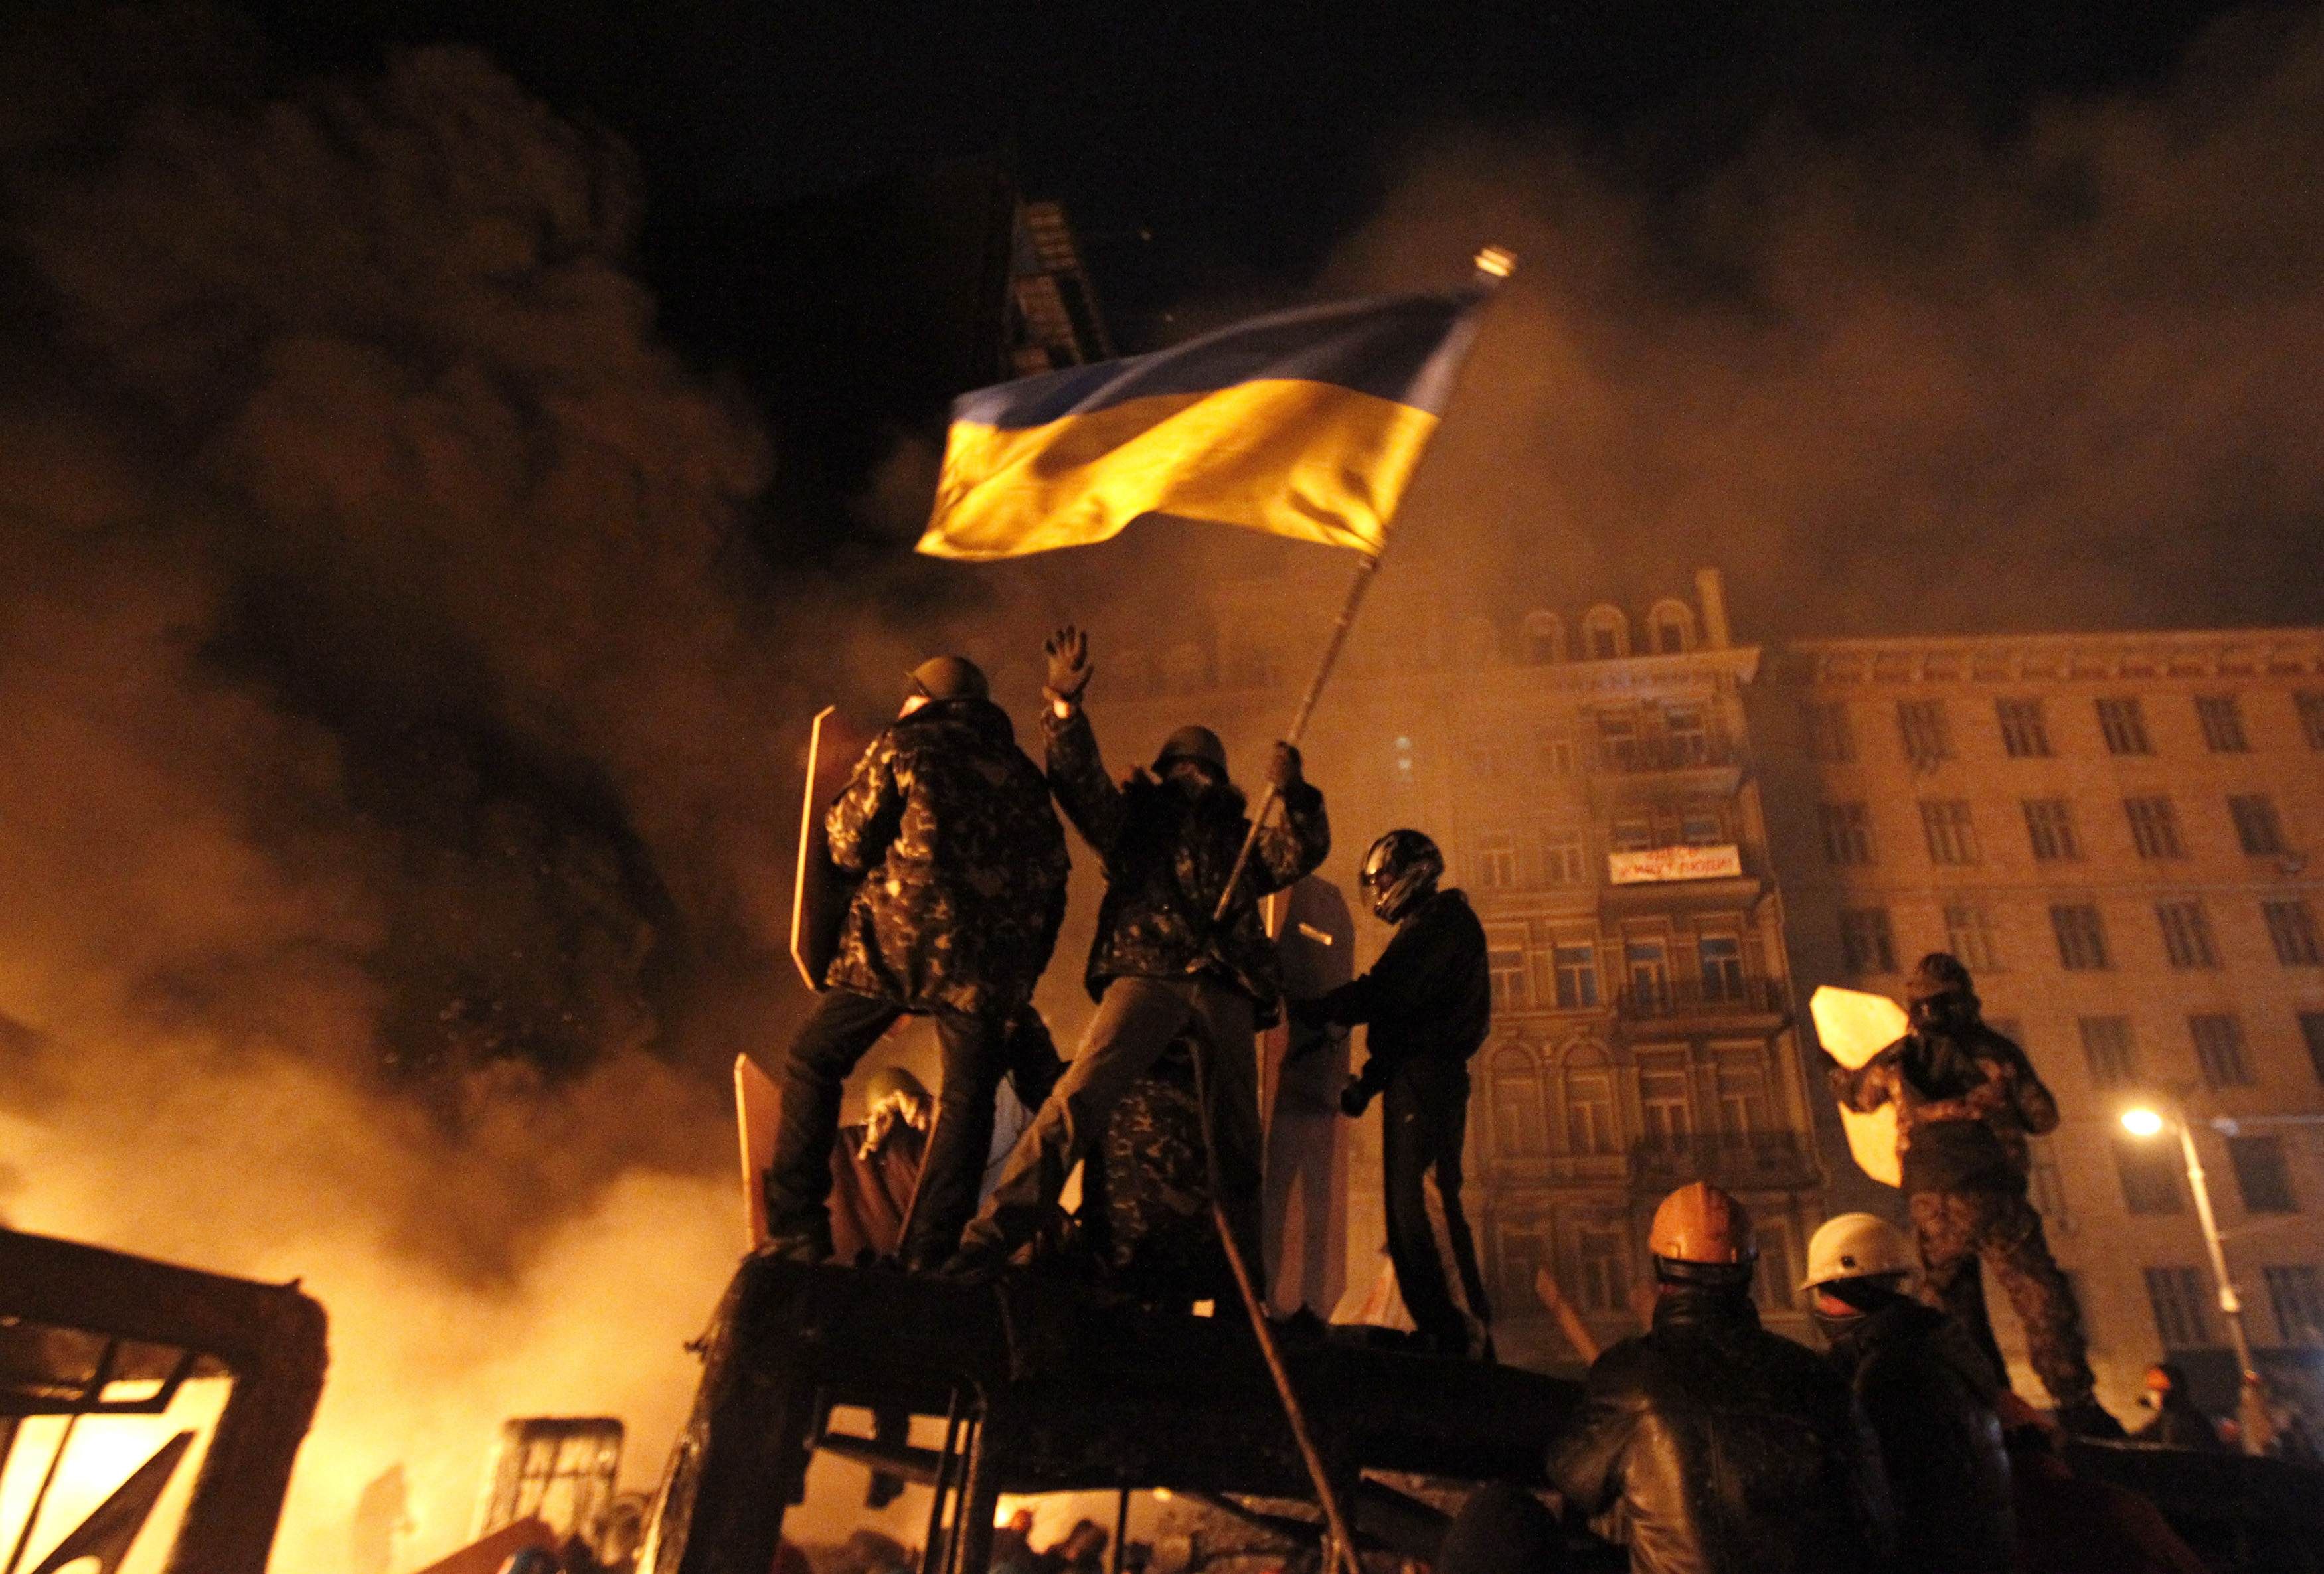 Третю річницю Вогнехреща у Києві «святкували» з бійками і палаючими шинами